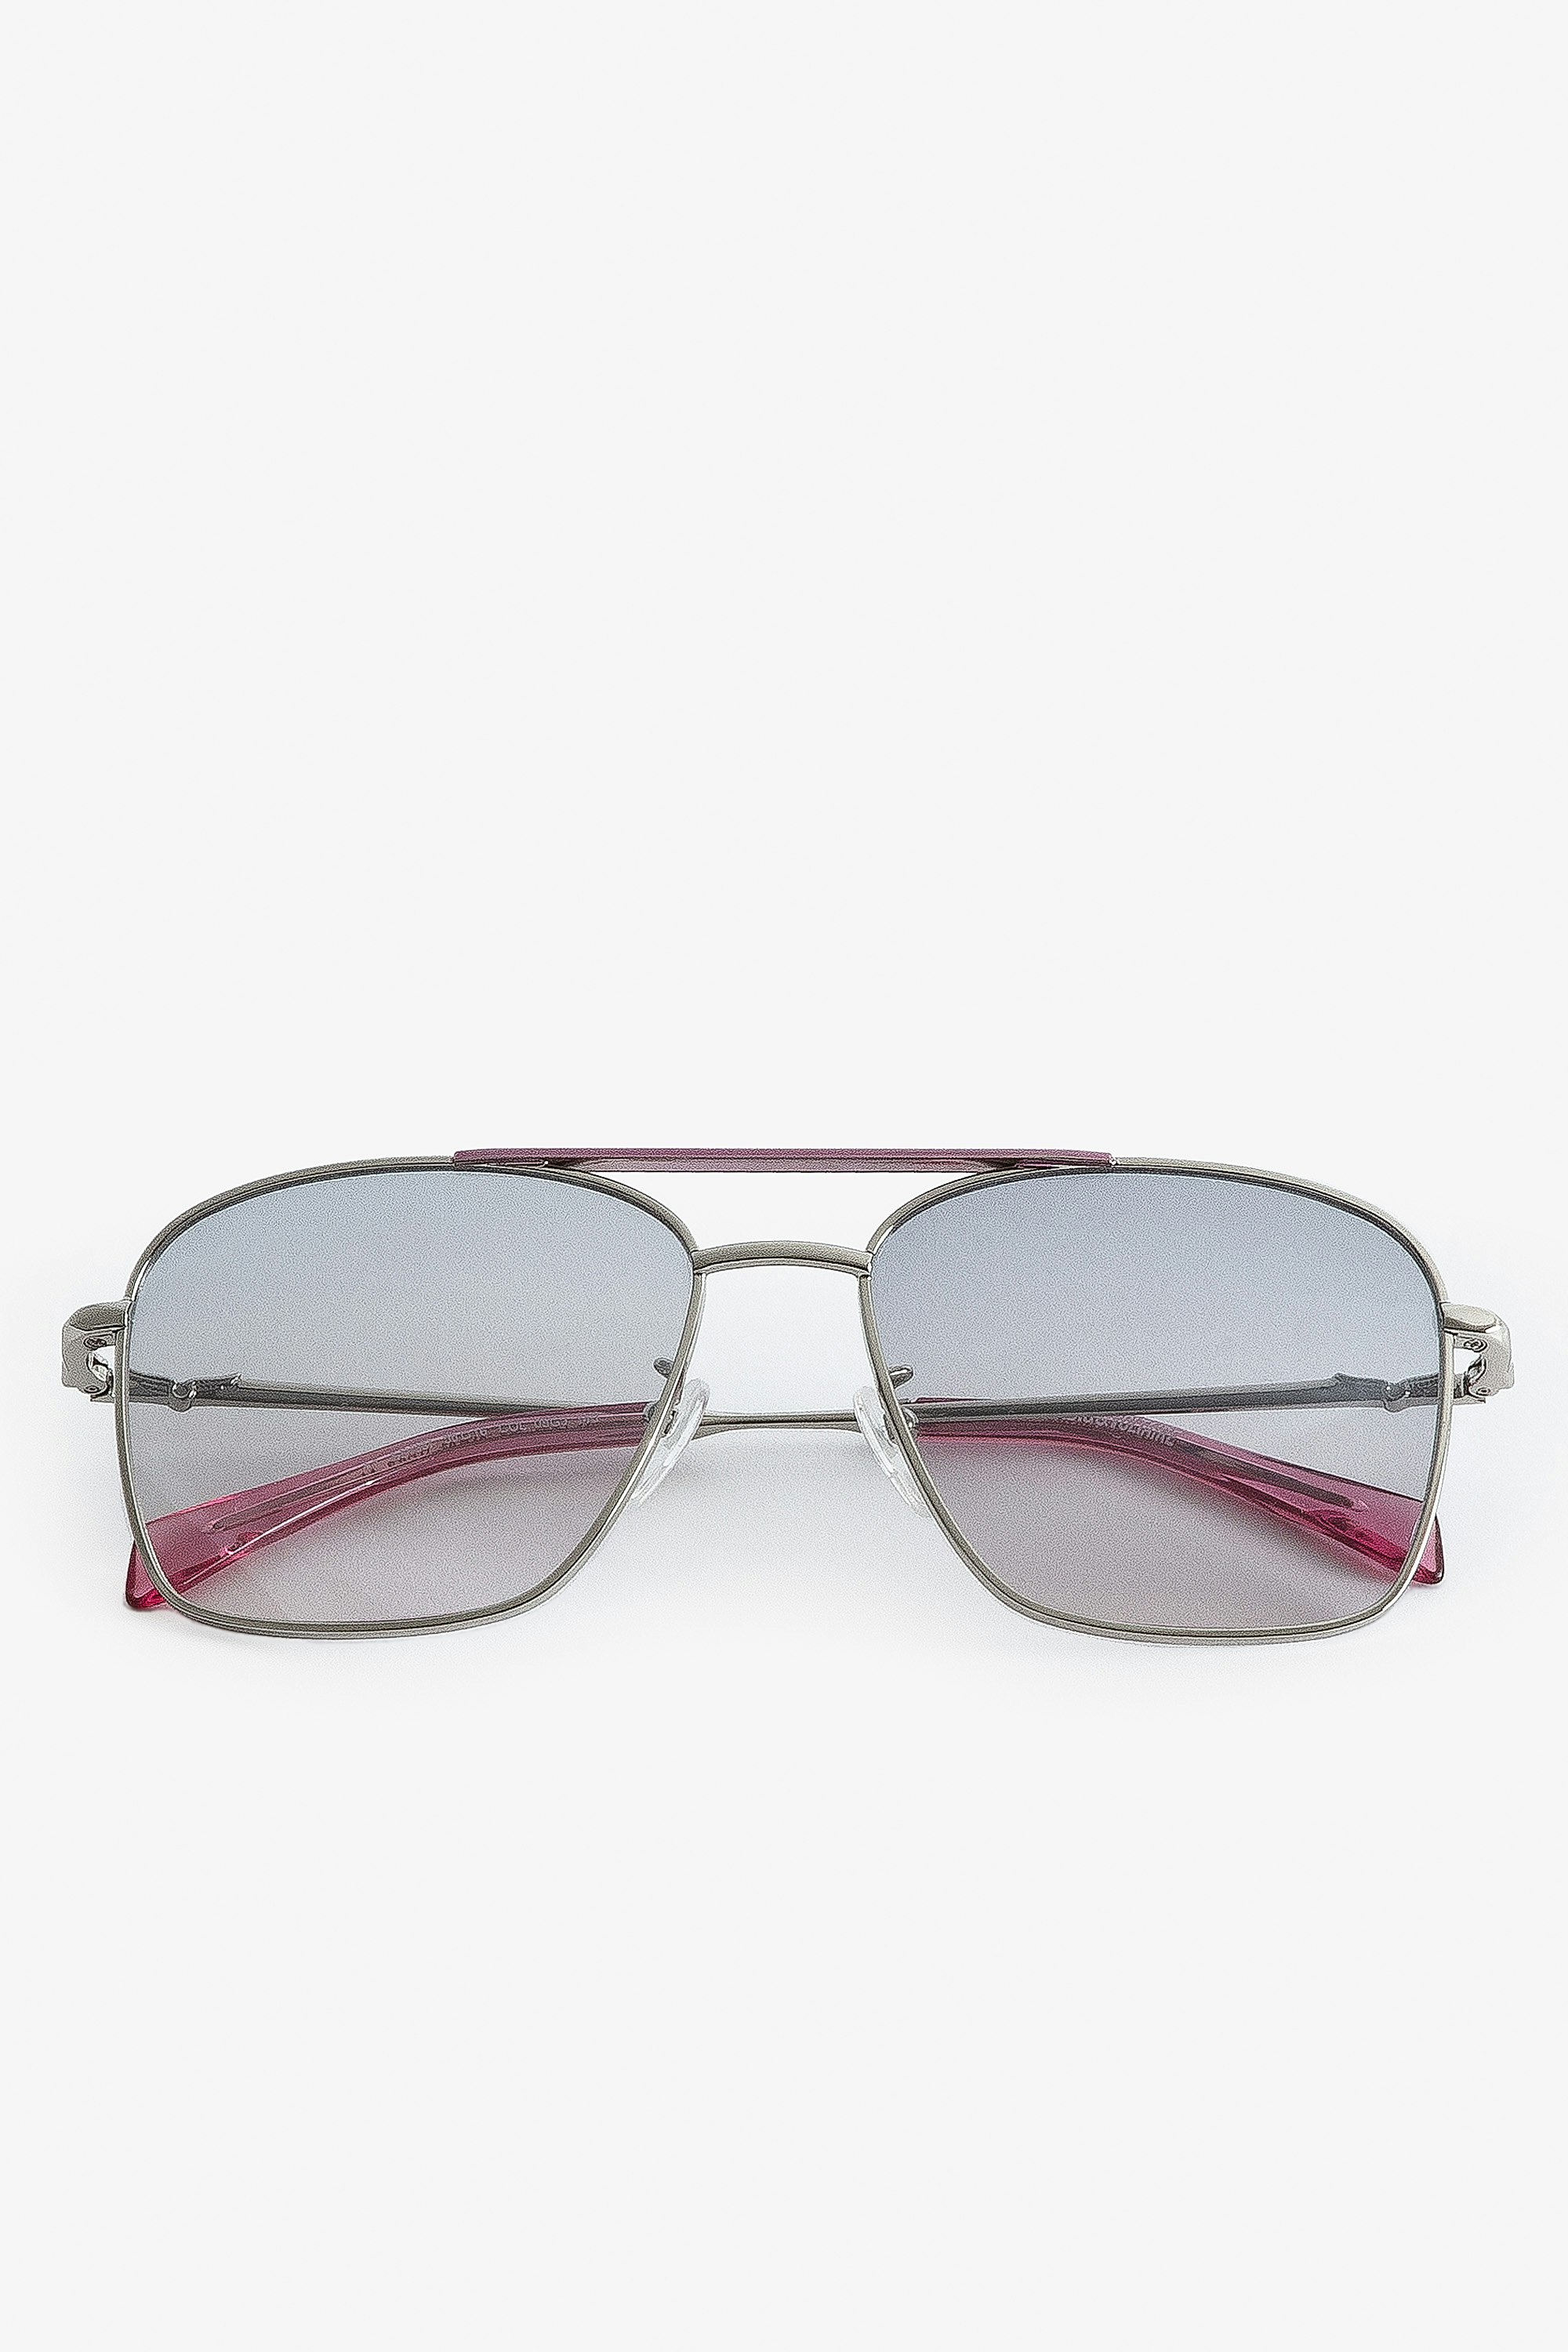 Gafas de sol Wings Aviator Gafas de sol aviador unisex de metal rosa con cristales ahumados